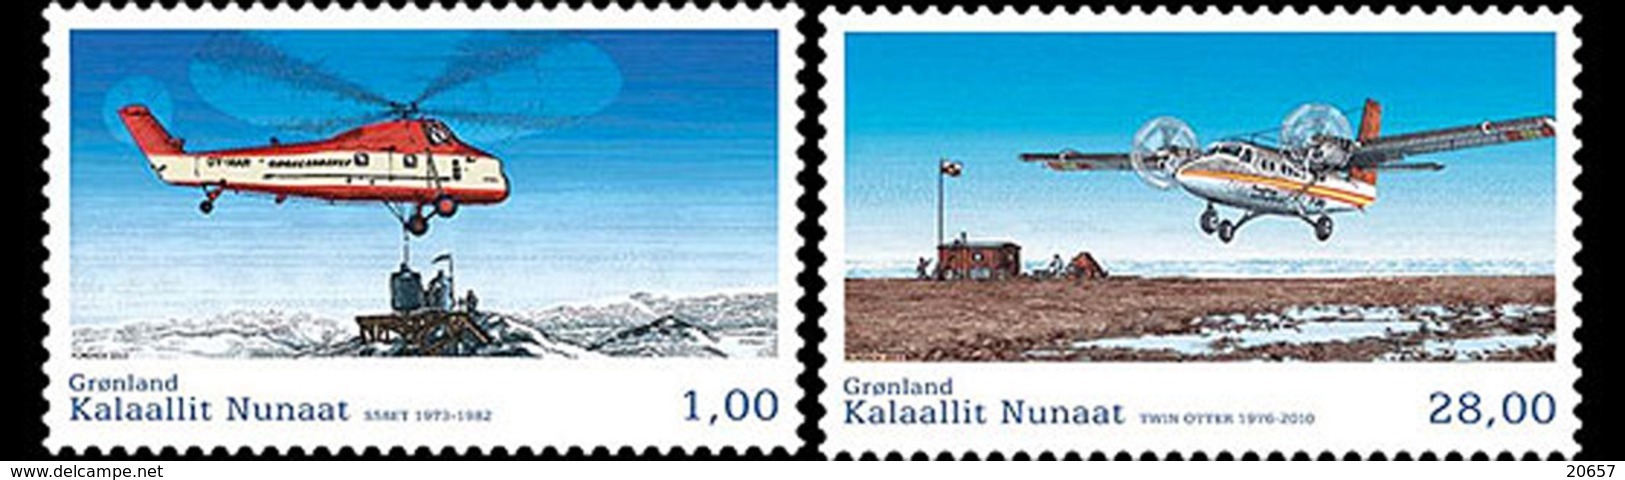 Danmark Gronland 0627/28 Avion, Hélicoptère - Stations Scientifiques & Stations Dérivantes Arctiques